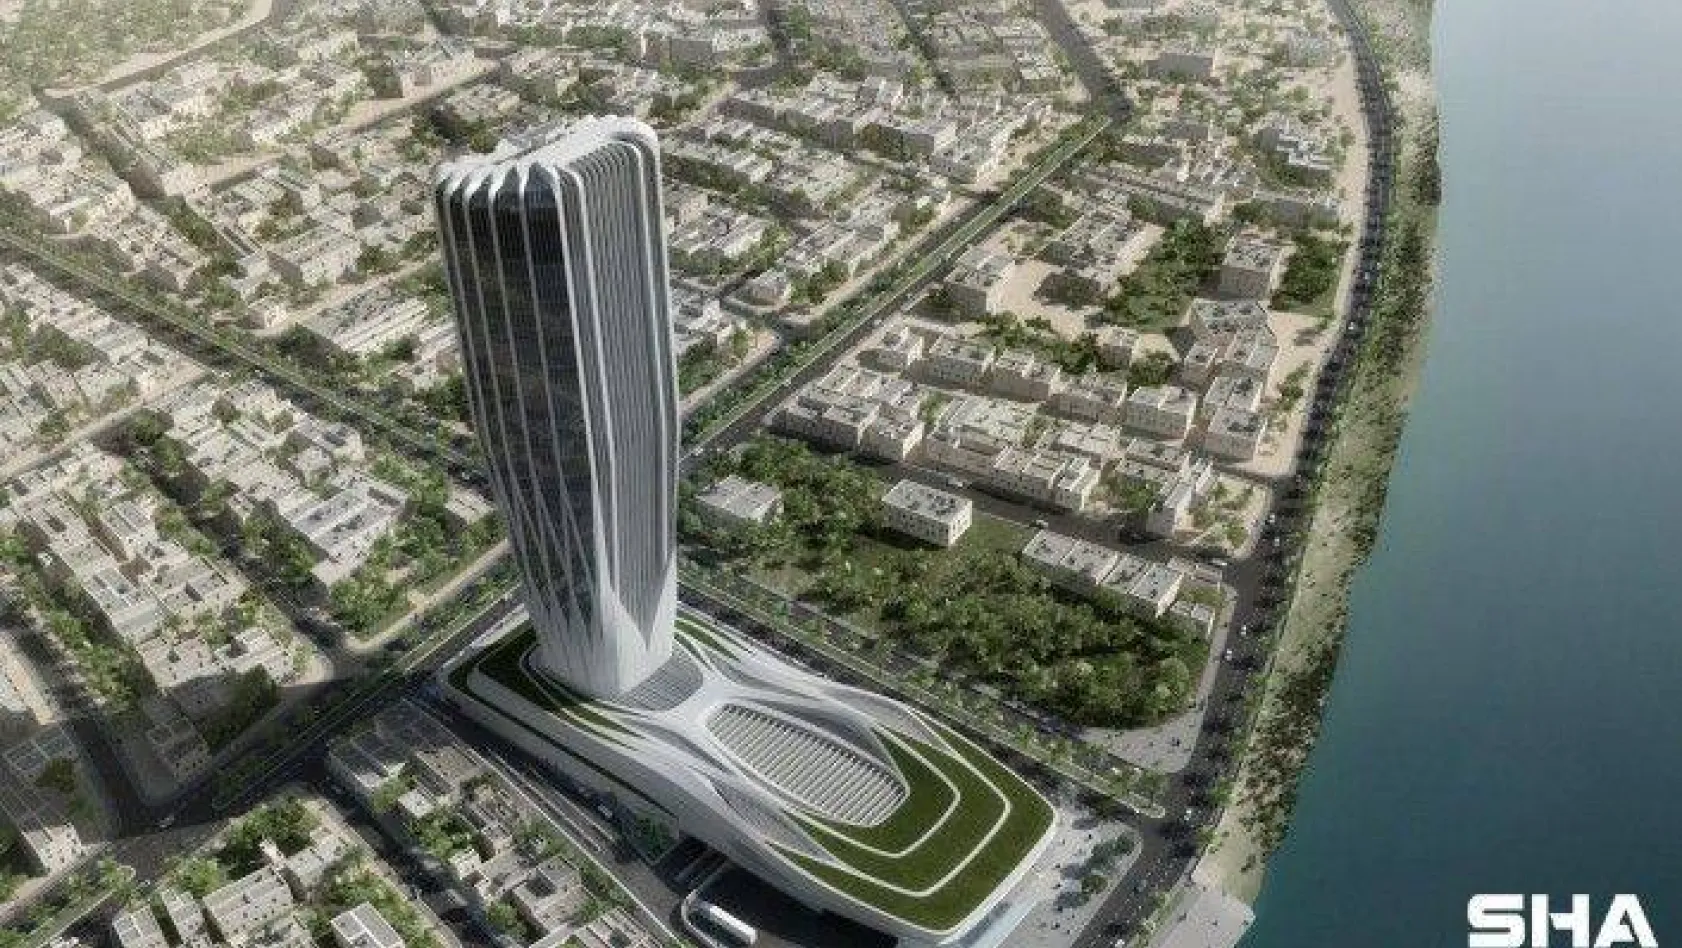 Zaha Hadid'in son projesi Irak Merkez Bankası'na özel kalıp sistemi